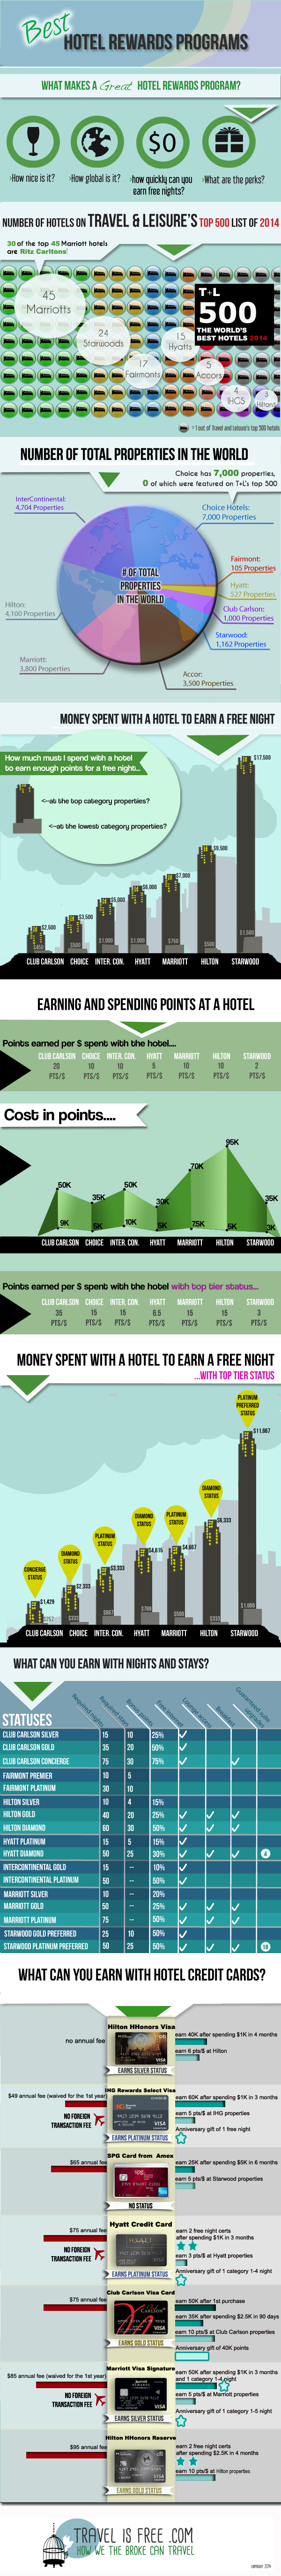 Travelisfree Infographic